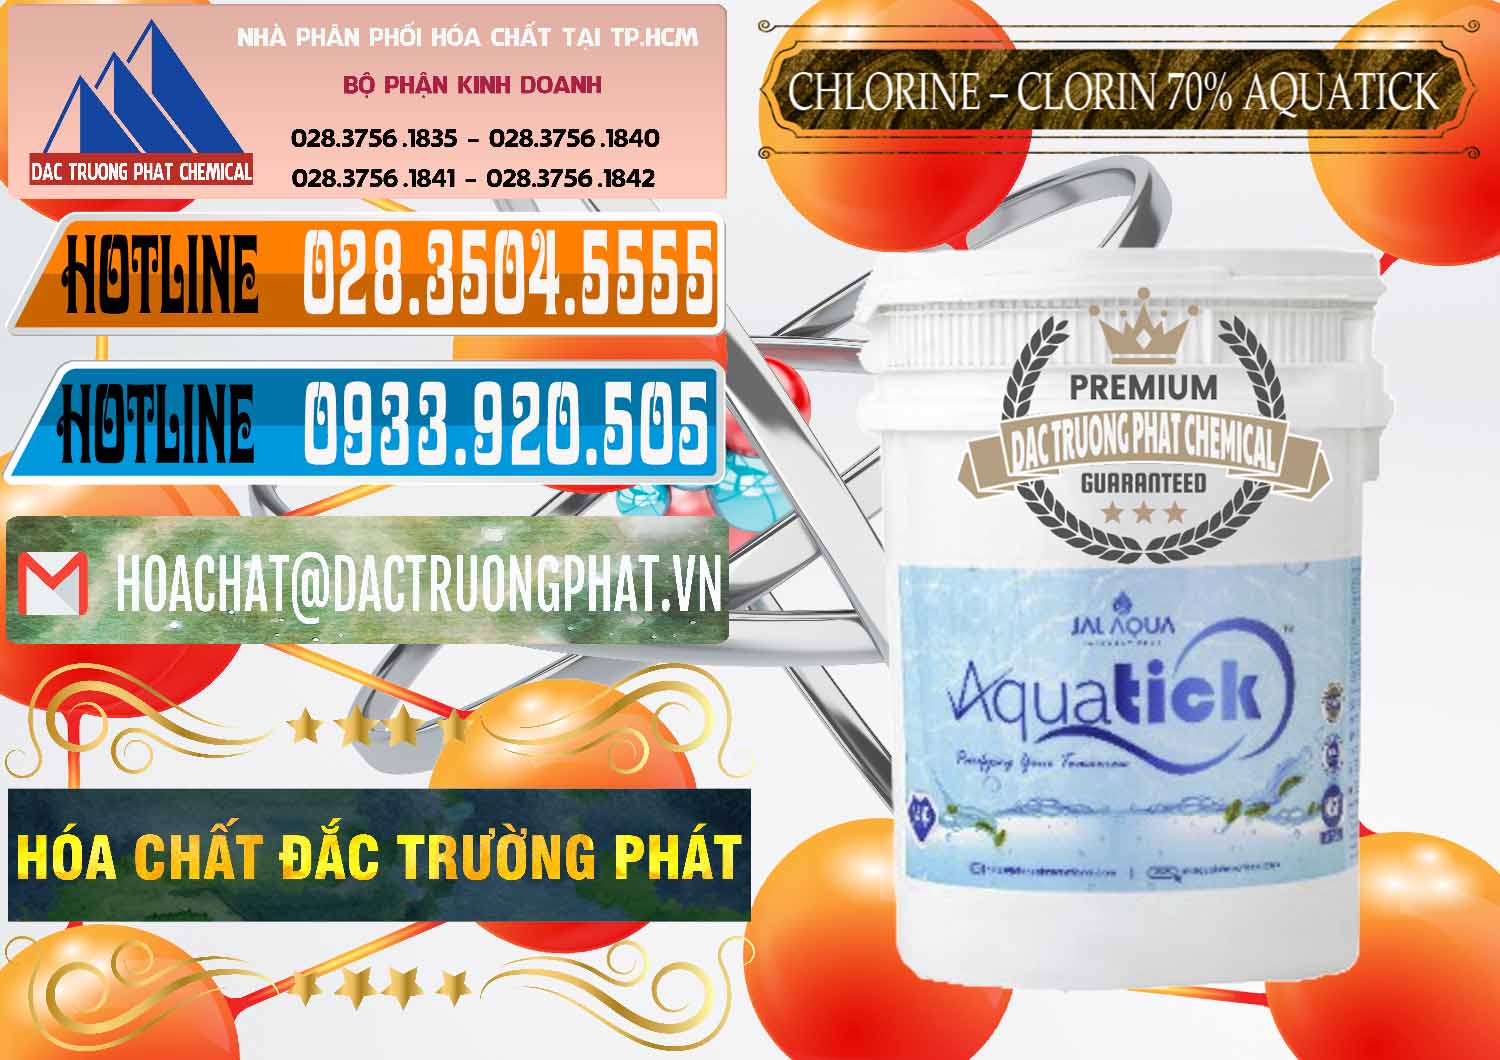 Cty phân phối và bán Chlorine – Clorin 70% Aquatick Thùng Cao Jal Aqua Ấn Độ India - 0237 - Công ty phân phối & cung cấp hóa chất tại TP.HCM - stmp.net